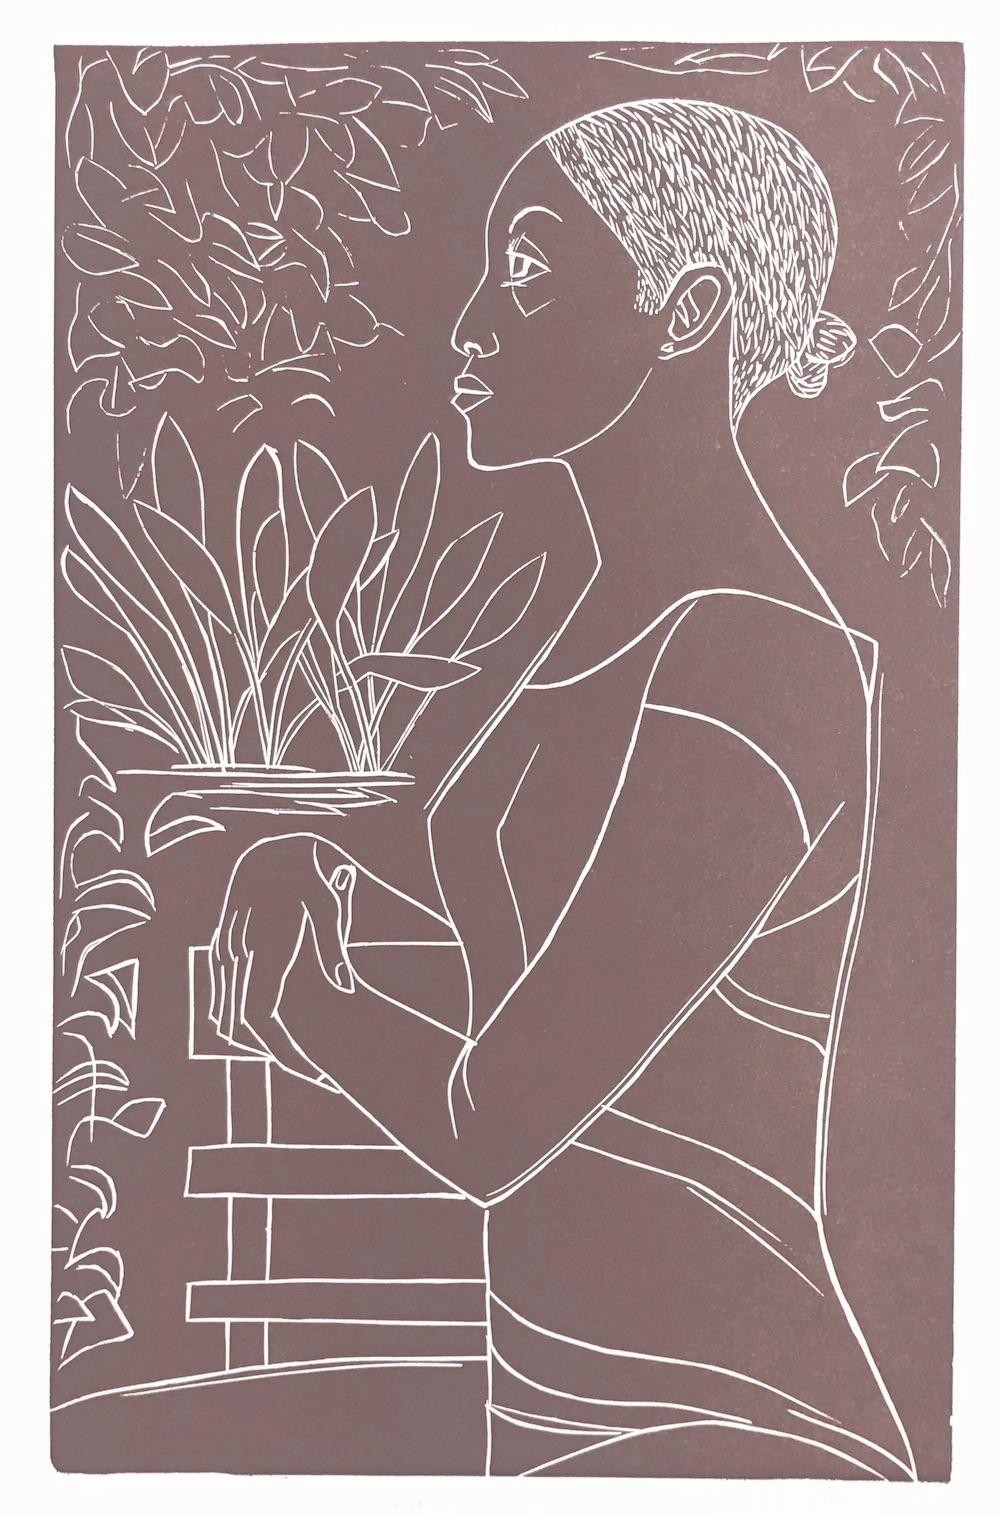 Portrait de femme poétique noire, dessin au trait blanc, signé GLORY, Linocut - Print de Elizabeth Catlett